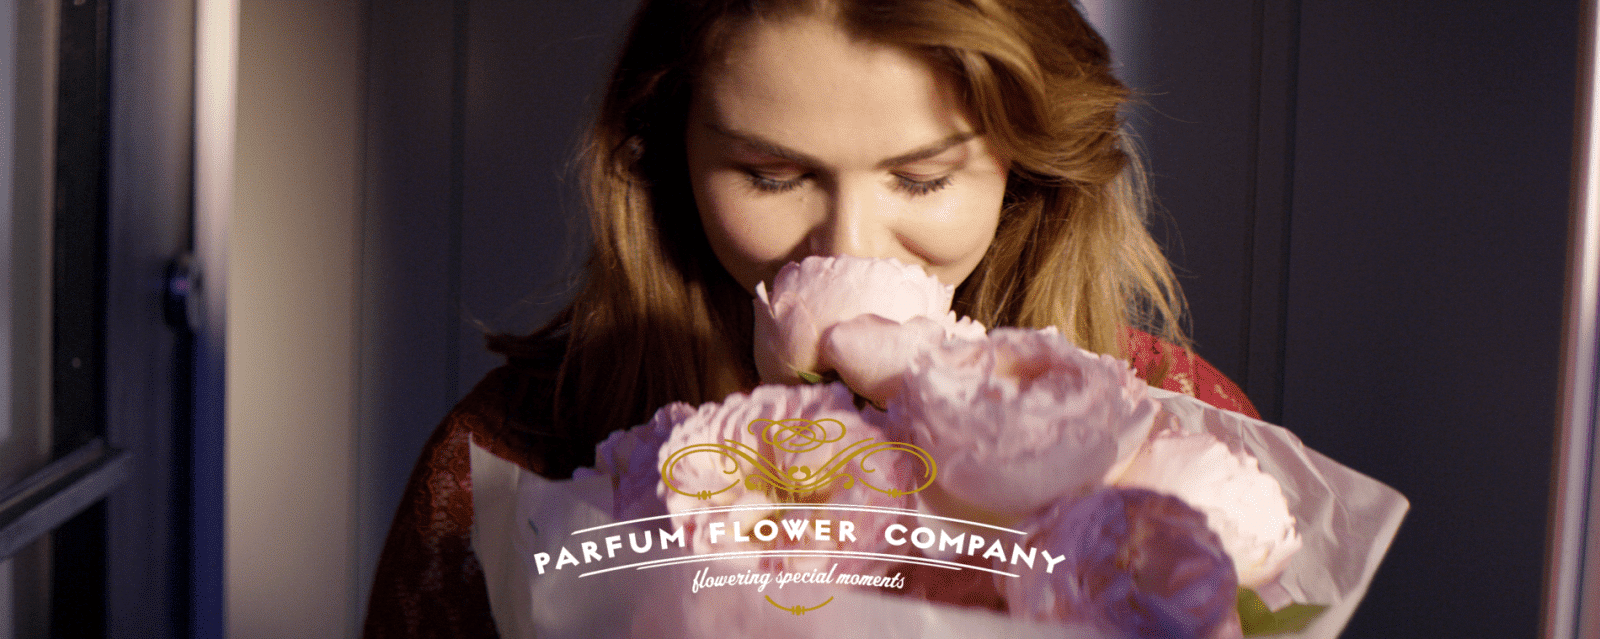 Blumengroßhändler Parfum Flower Company